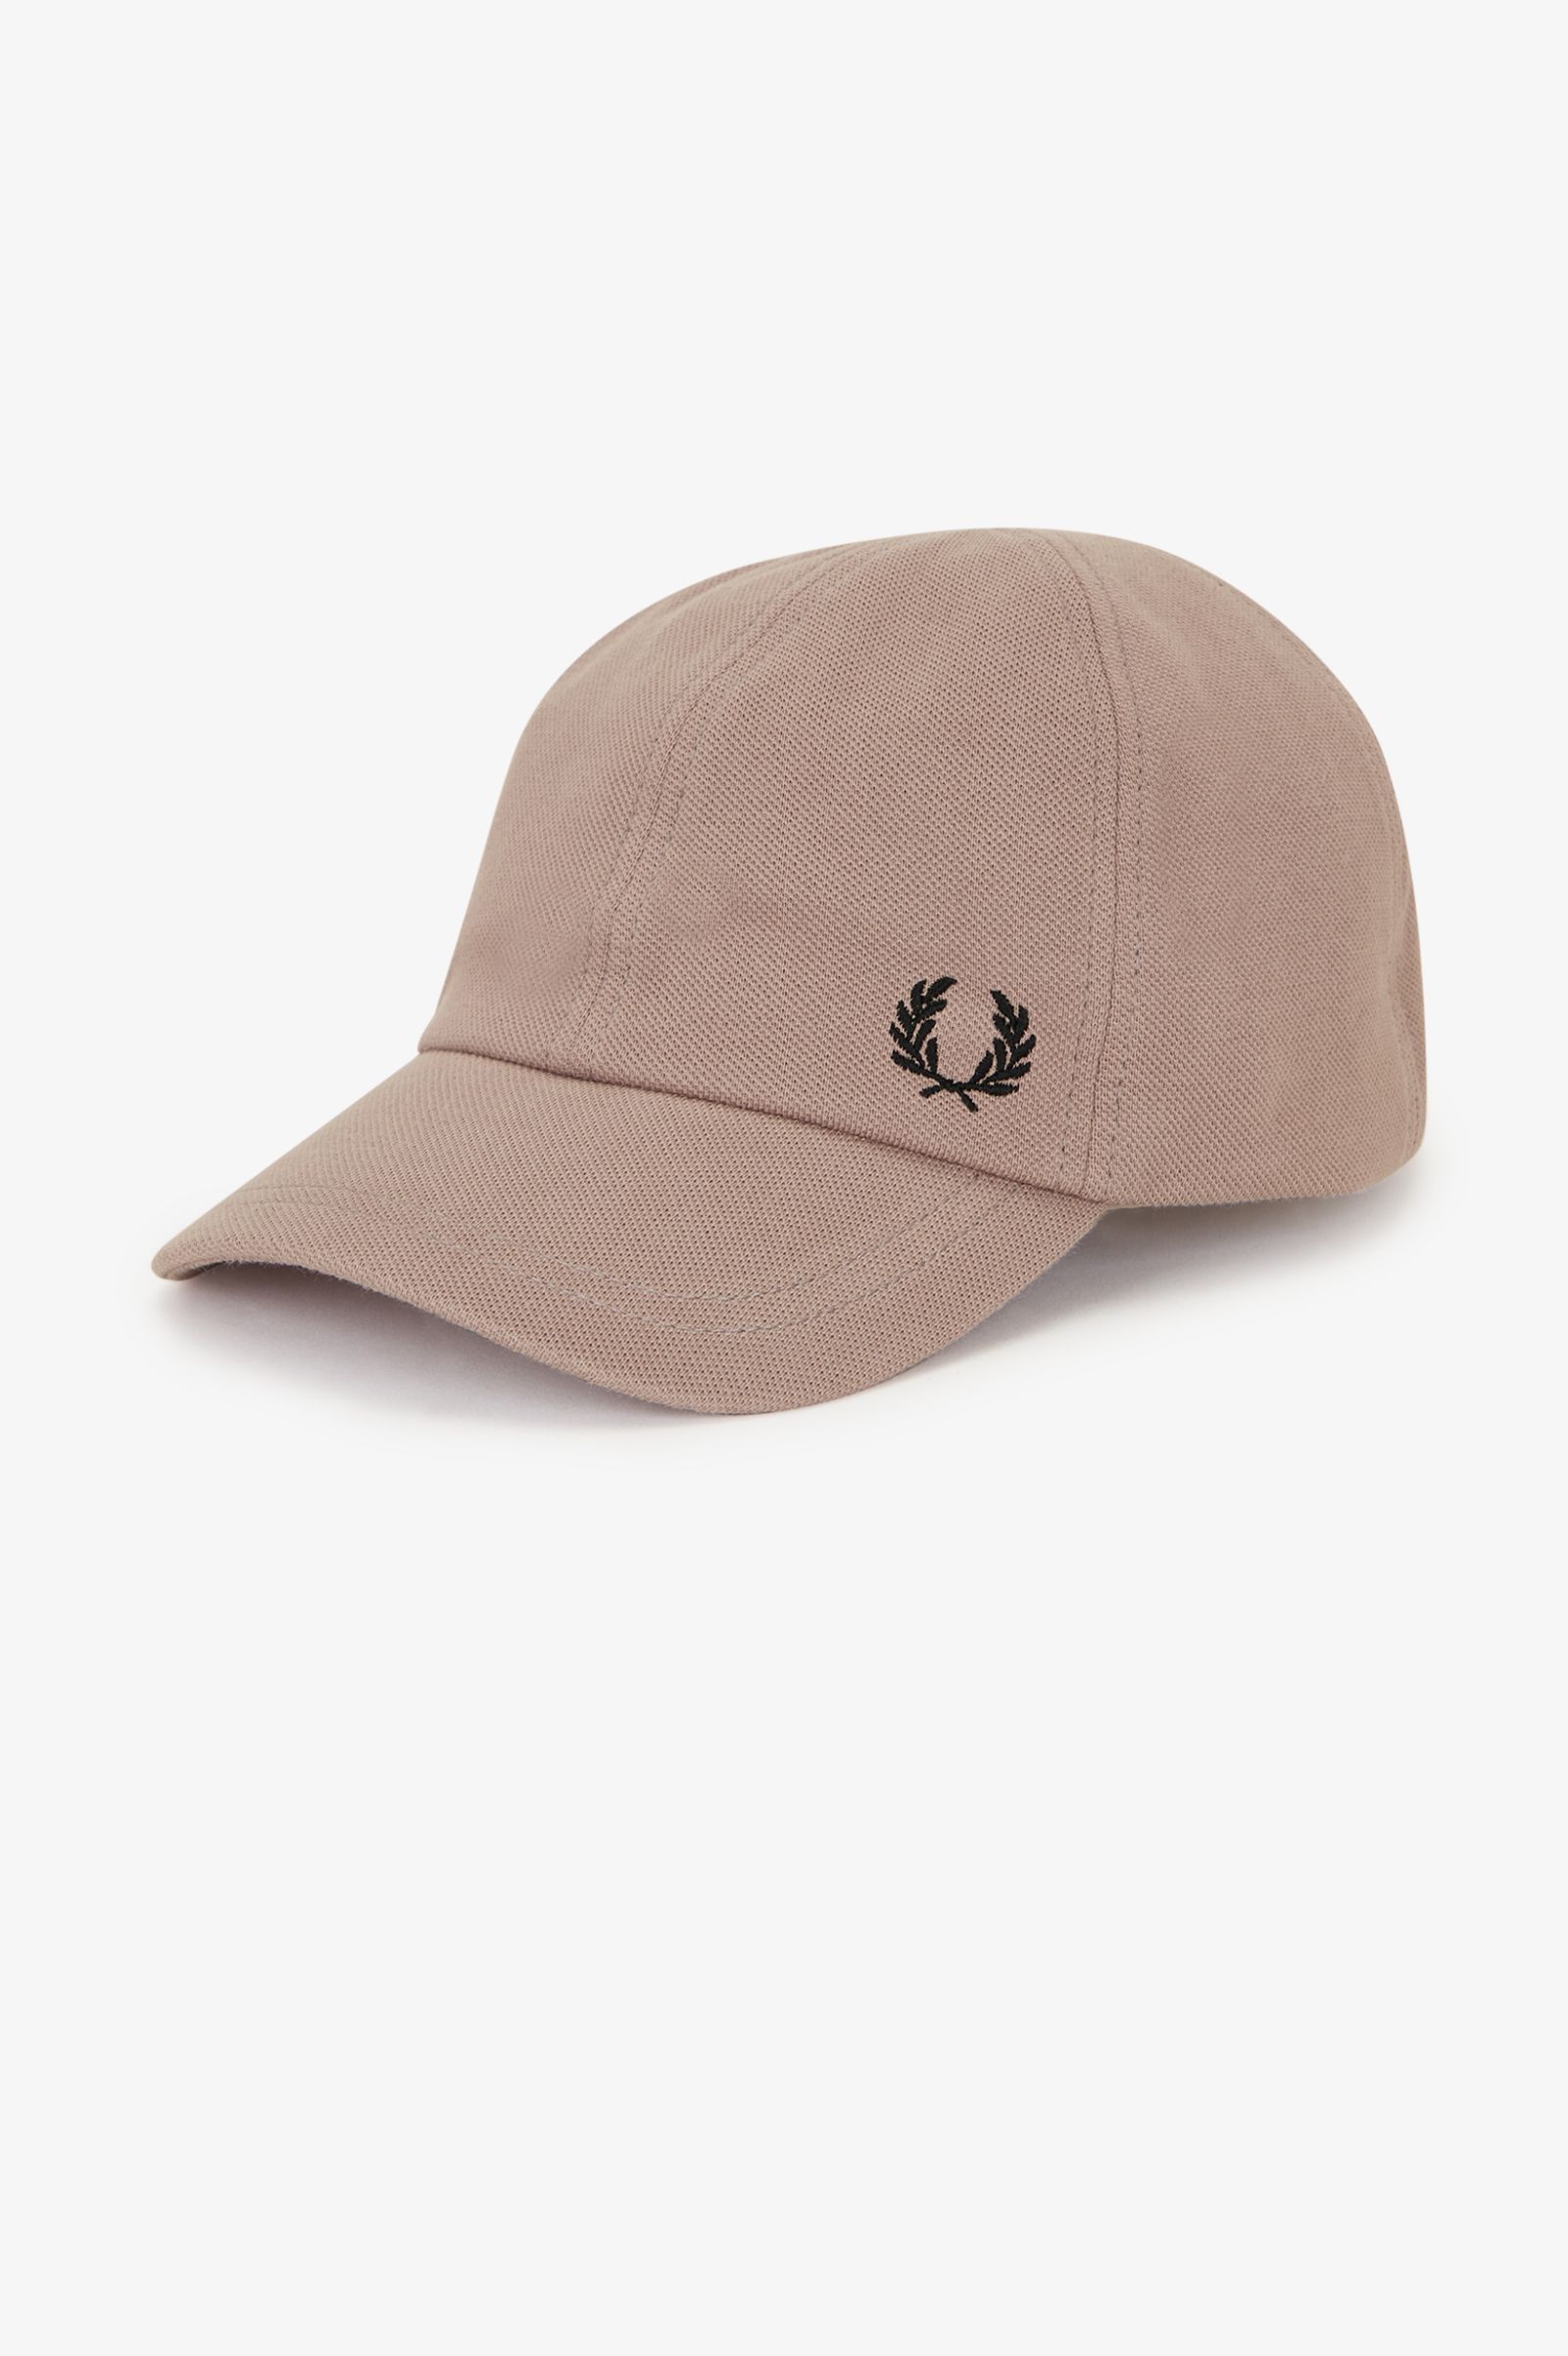 Classic Piqué Cap - Dark Pink / Black | Accessories | Hats, Wallets ...